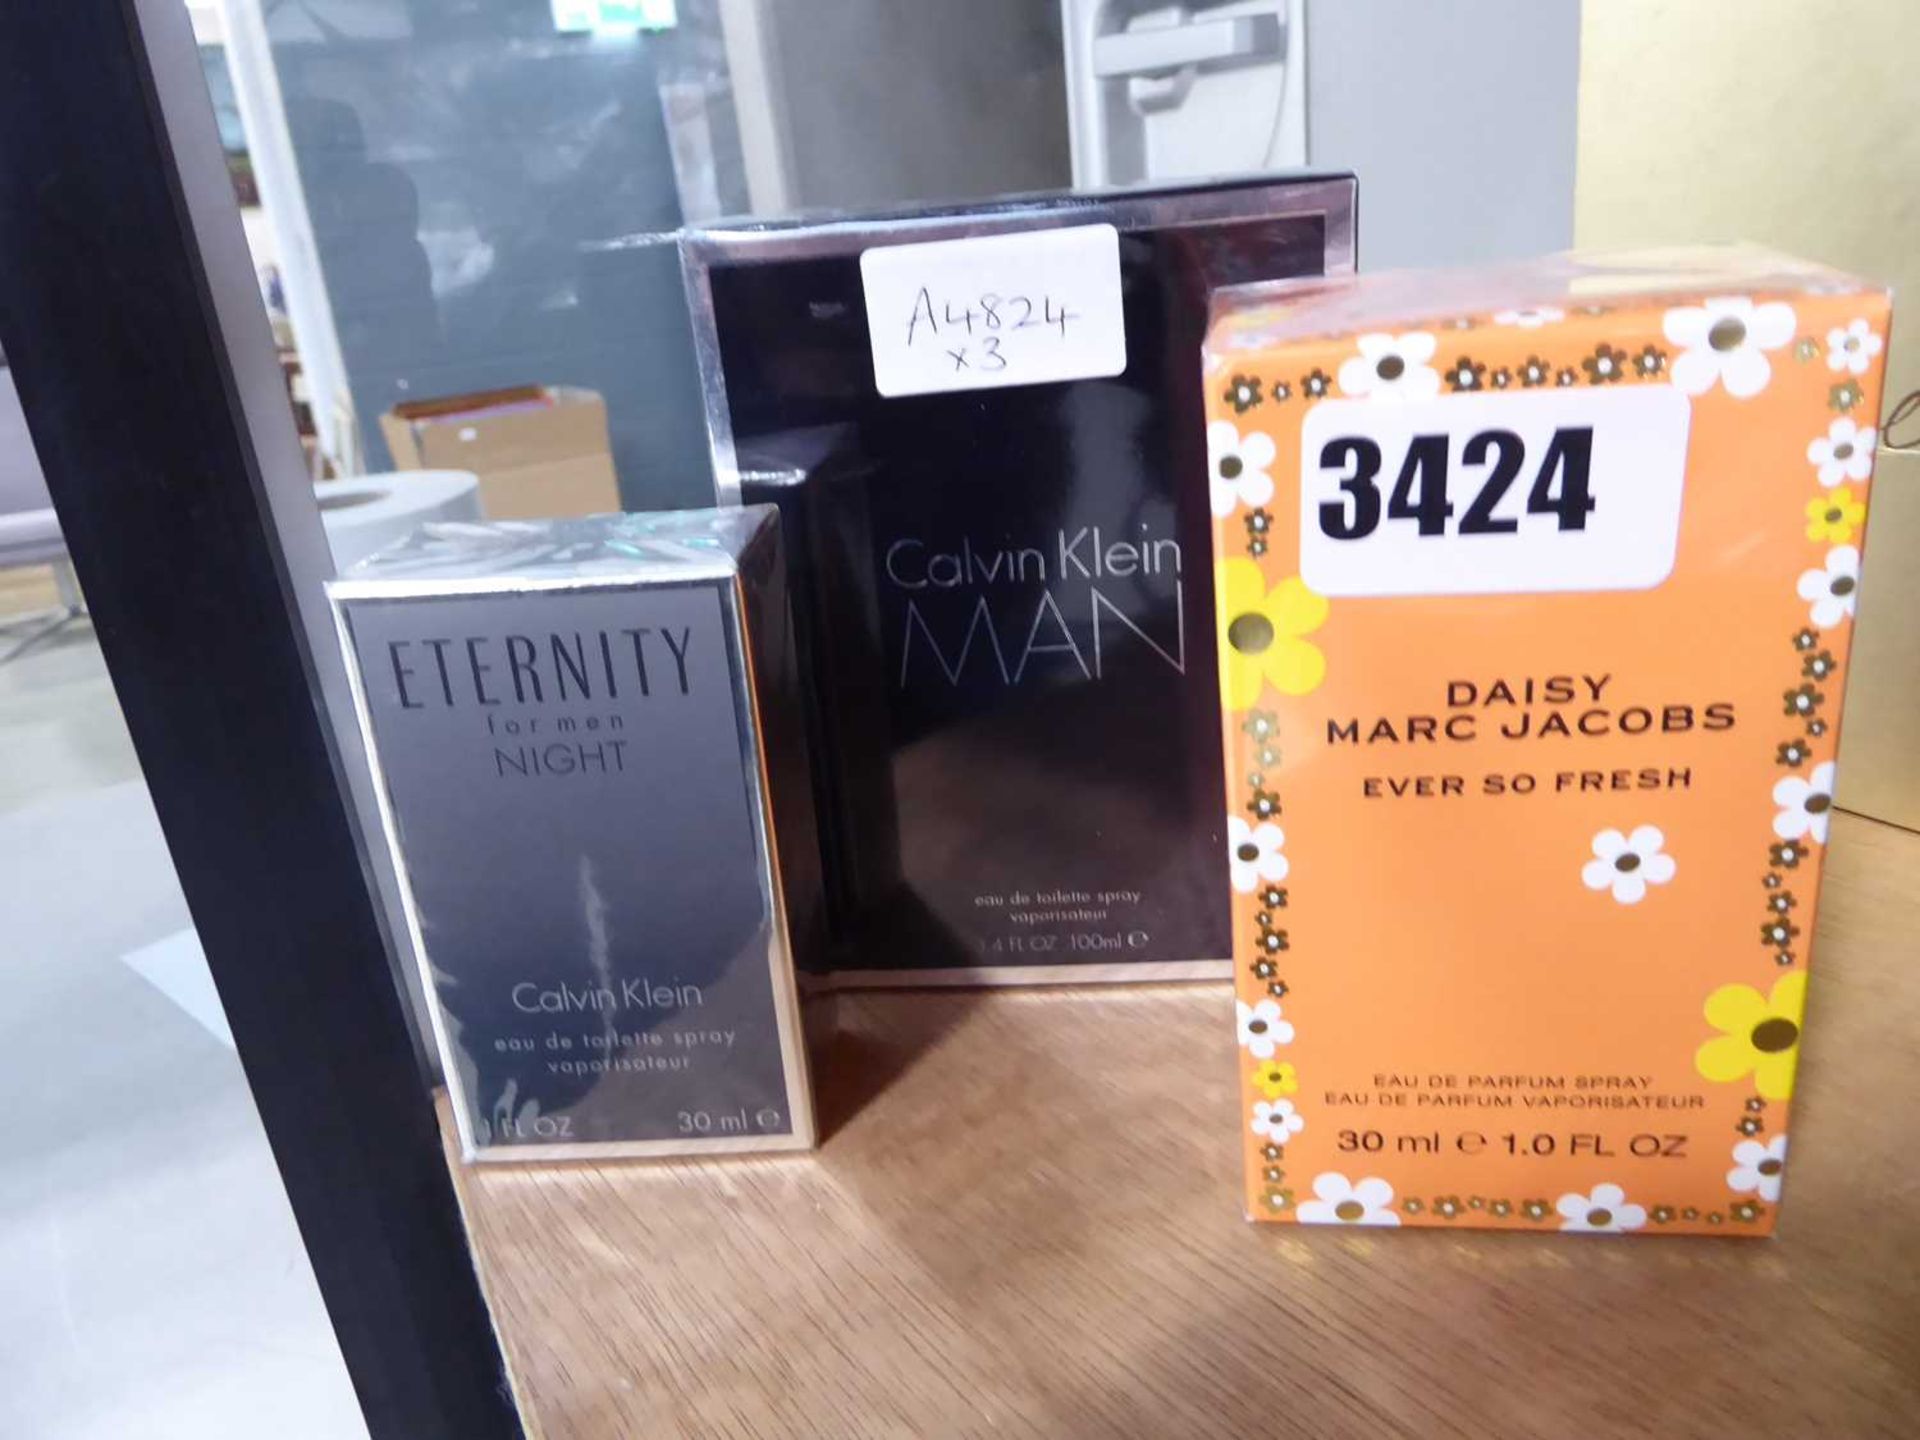 3 fragrances inc. Calvin Klein, Marc Jacobs and Calvin Klein Men